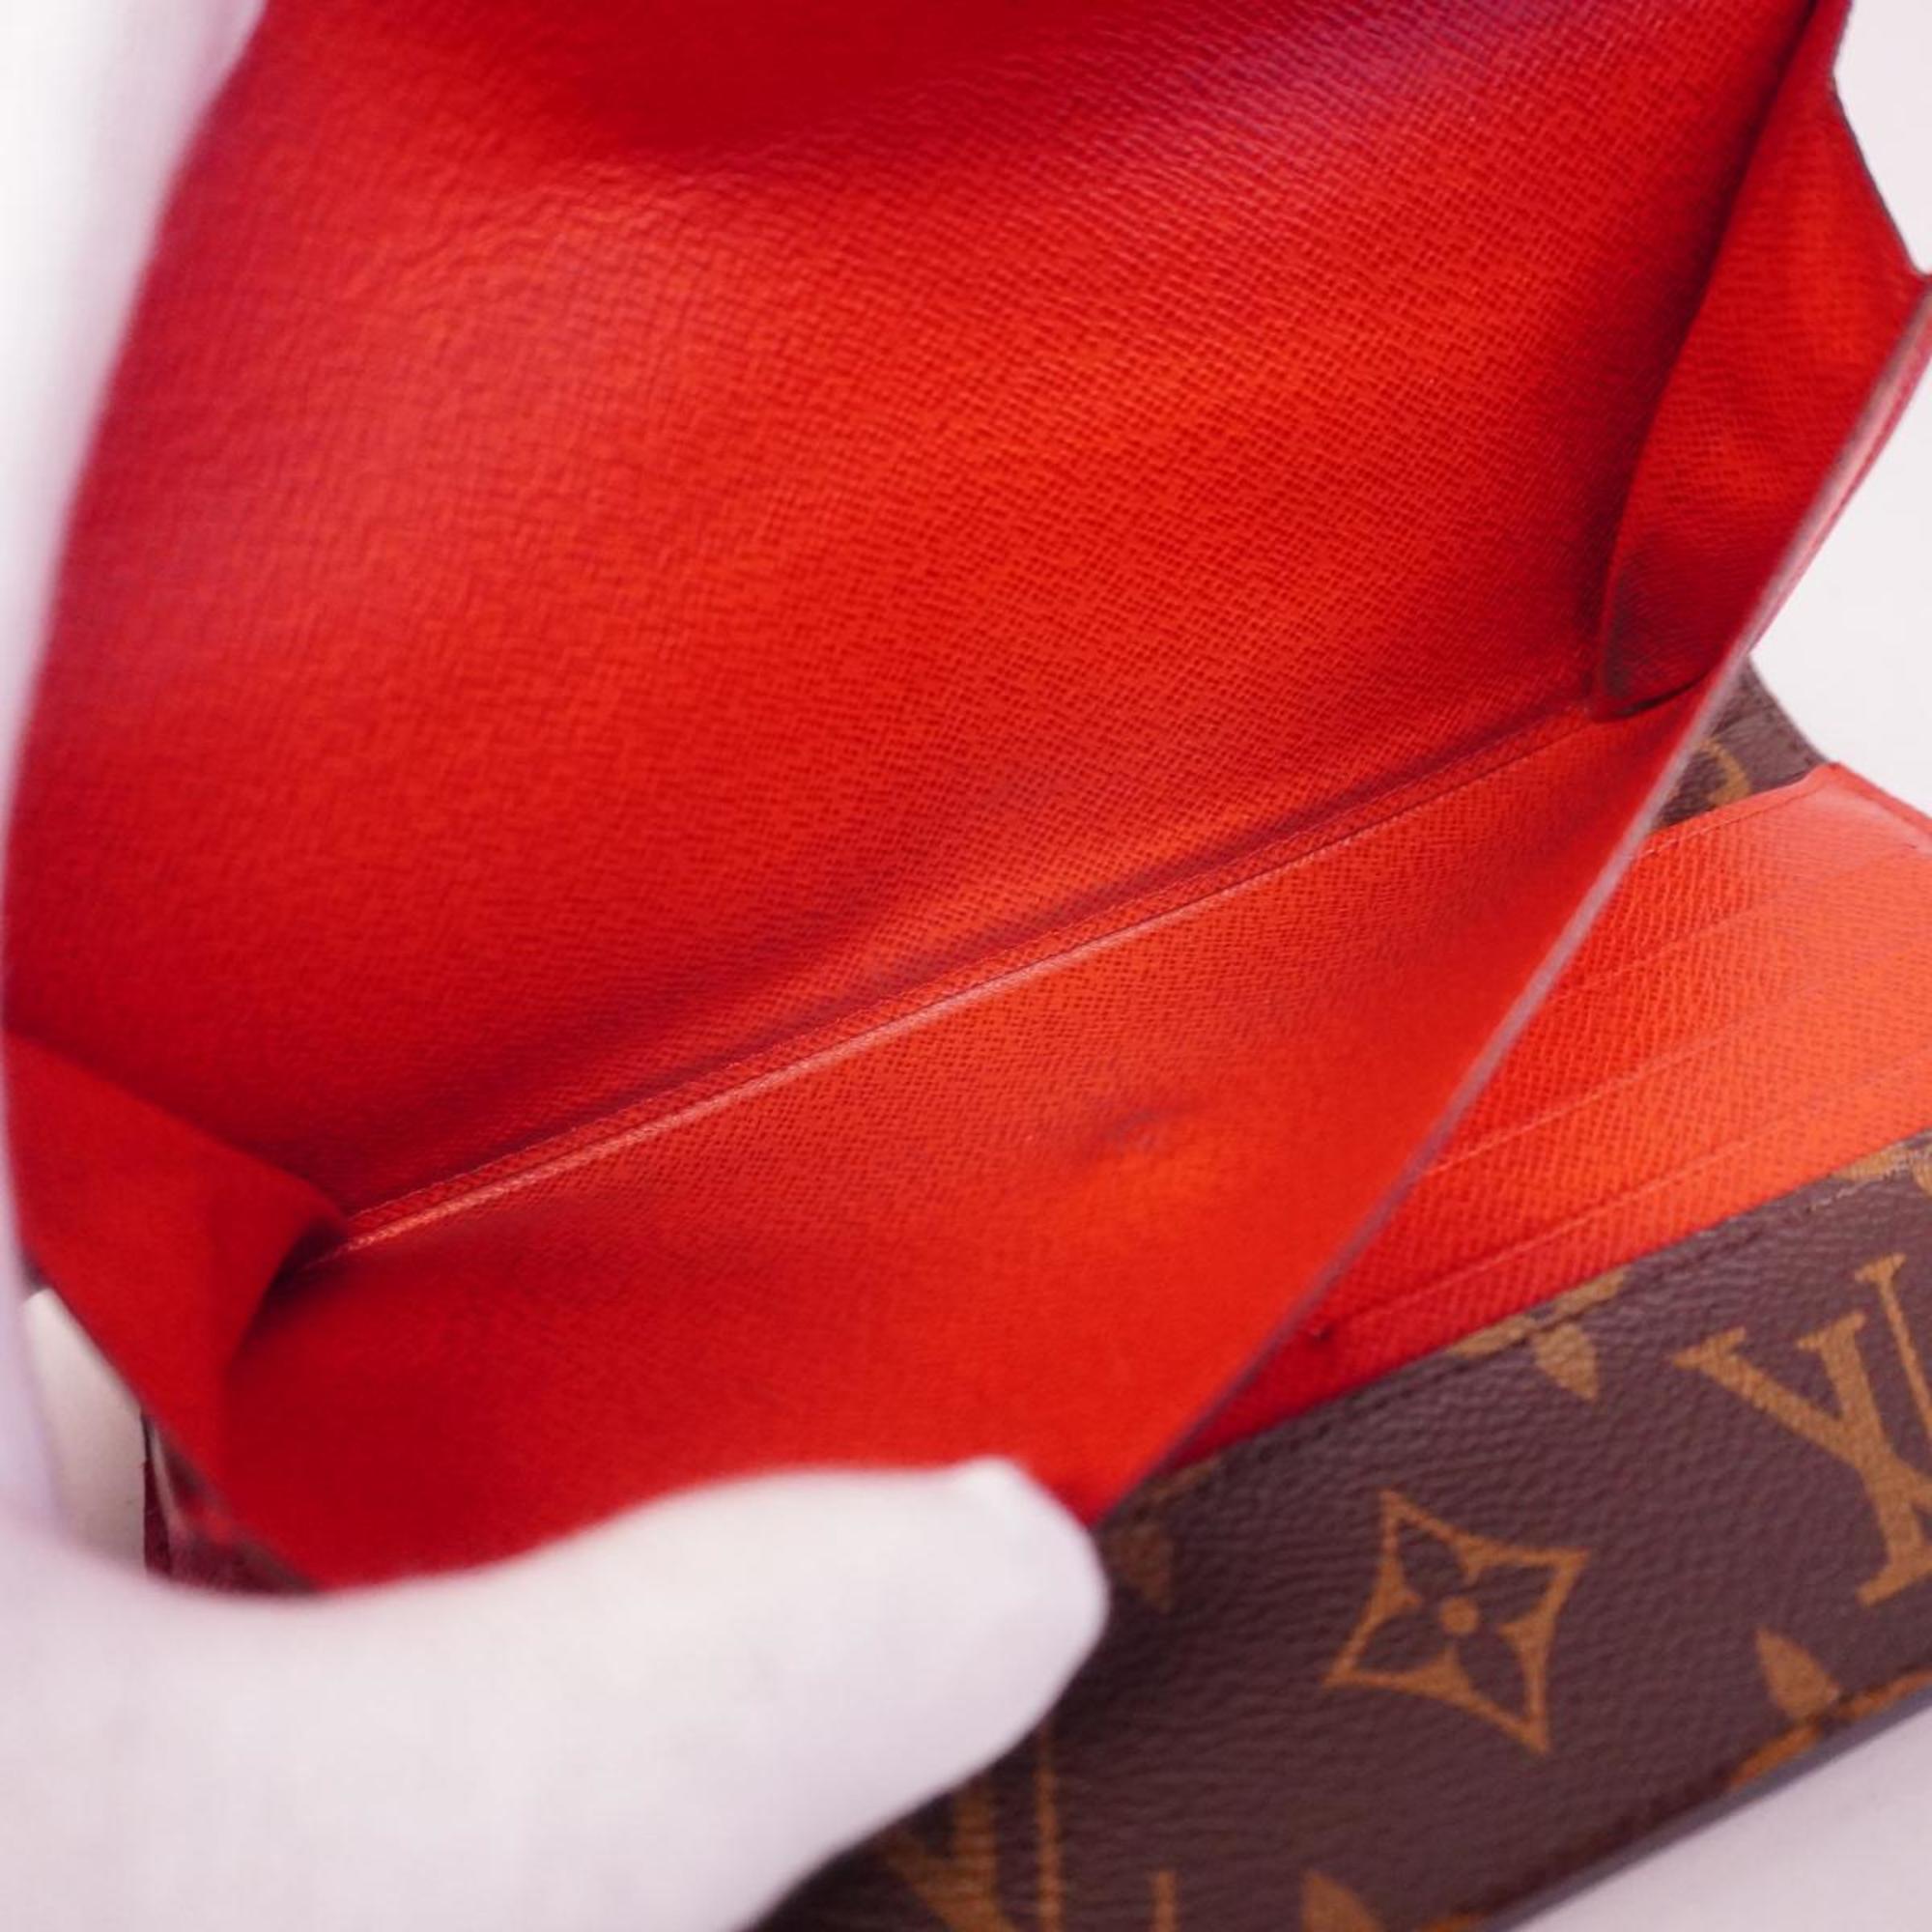 Louis Vuitton Tri-fold Long Wallet Monogram Epi Portefeuille Marie Roulon M60727 Brown Coquelicot Ladies